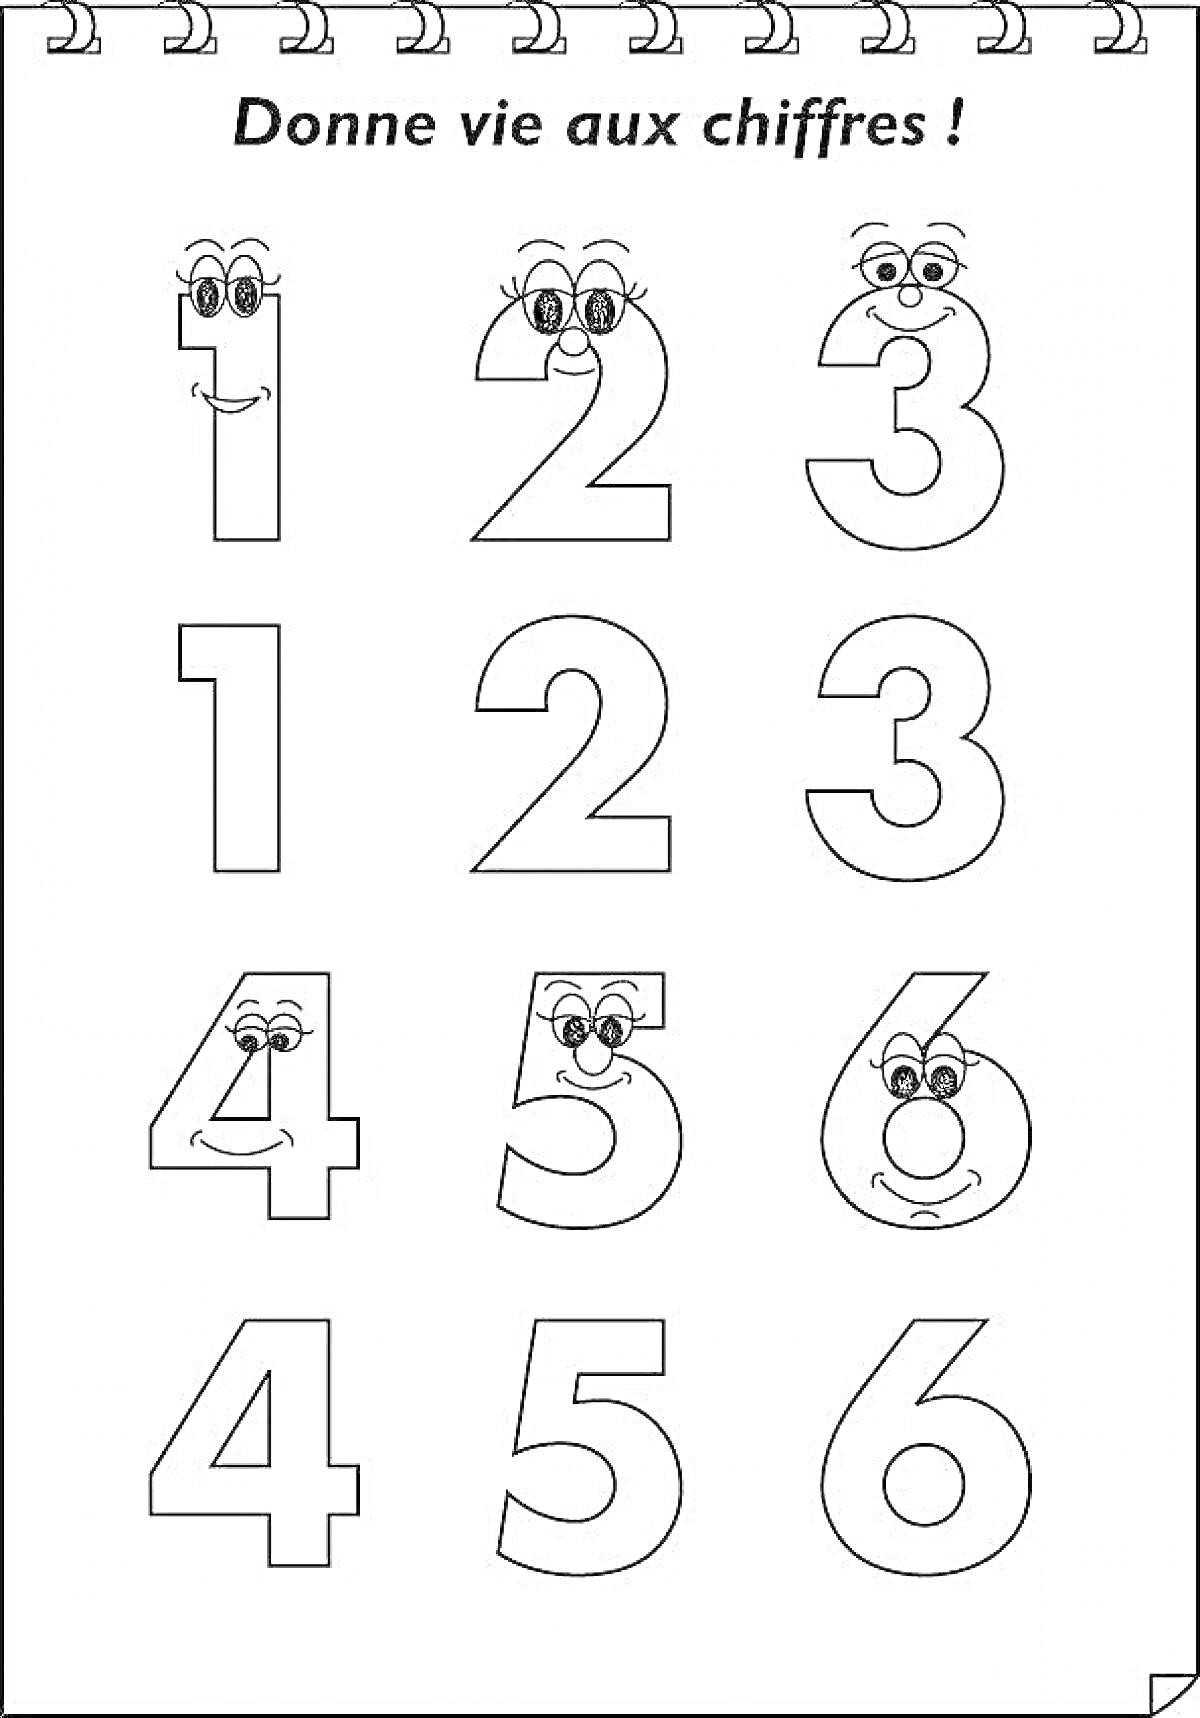 Раскраска Раскраска с цифрами (1, 2, 3 с глазами и улыбками, 1, 2, 3, 4, 5, 6 без глаз и улыбок)